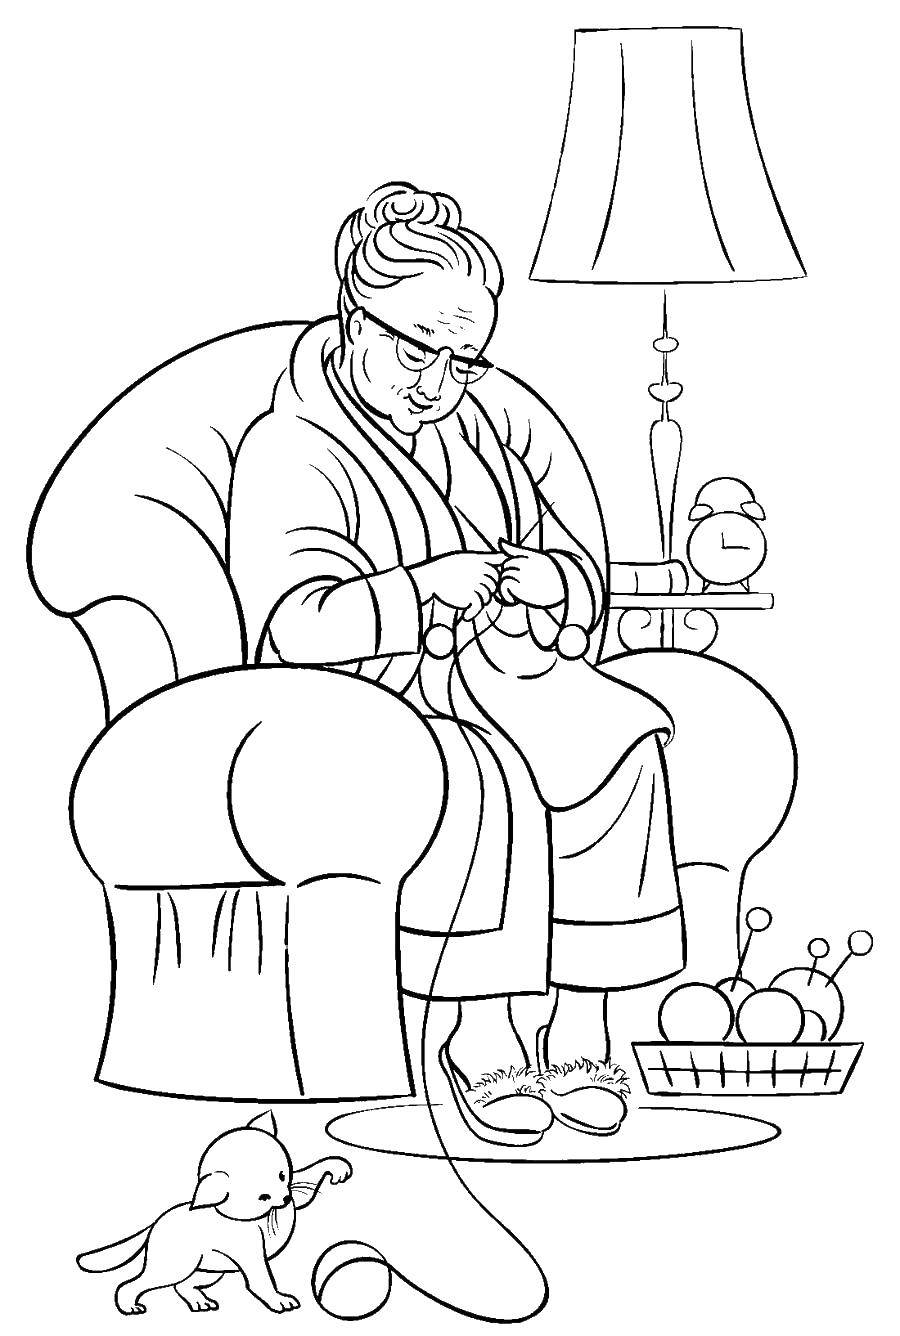 Название: Раскраска Бабушка вяжет. Категория: Кресло. Теги: котик играется с клубком, бабушка вяжет спицами, торшер.